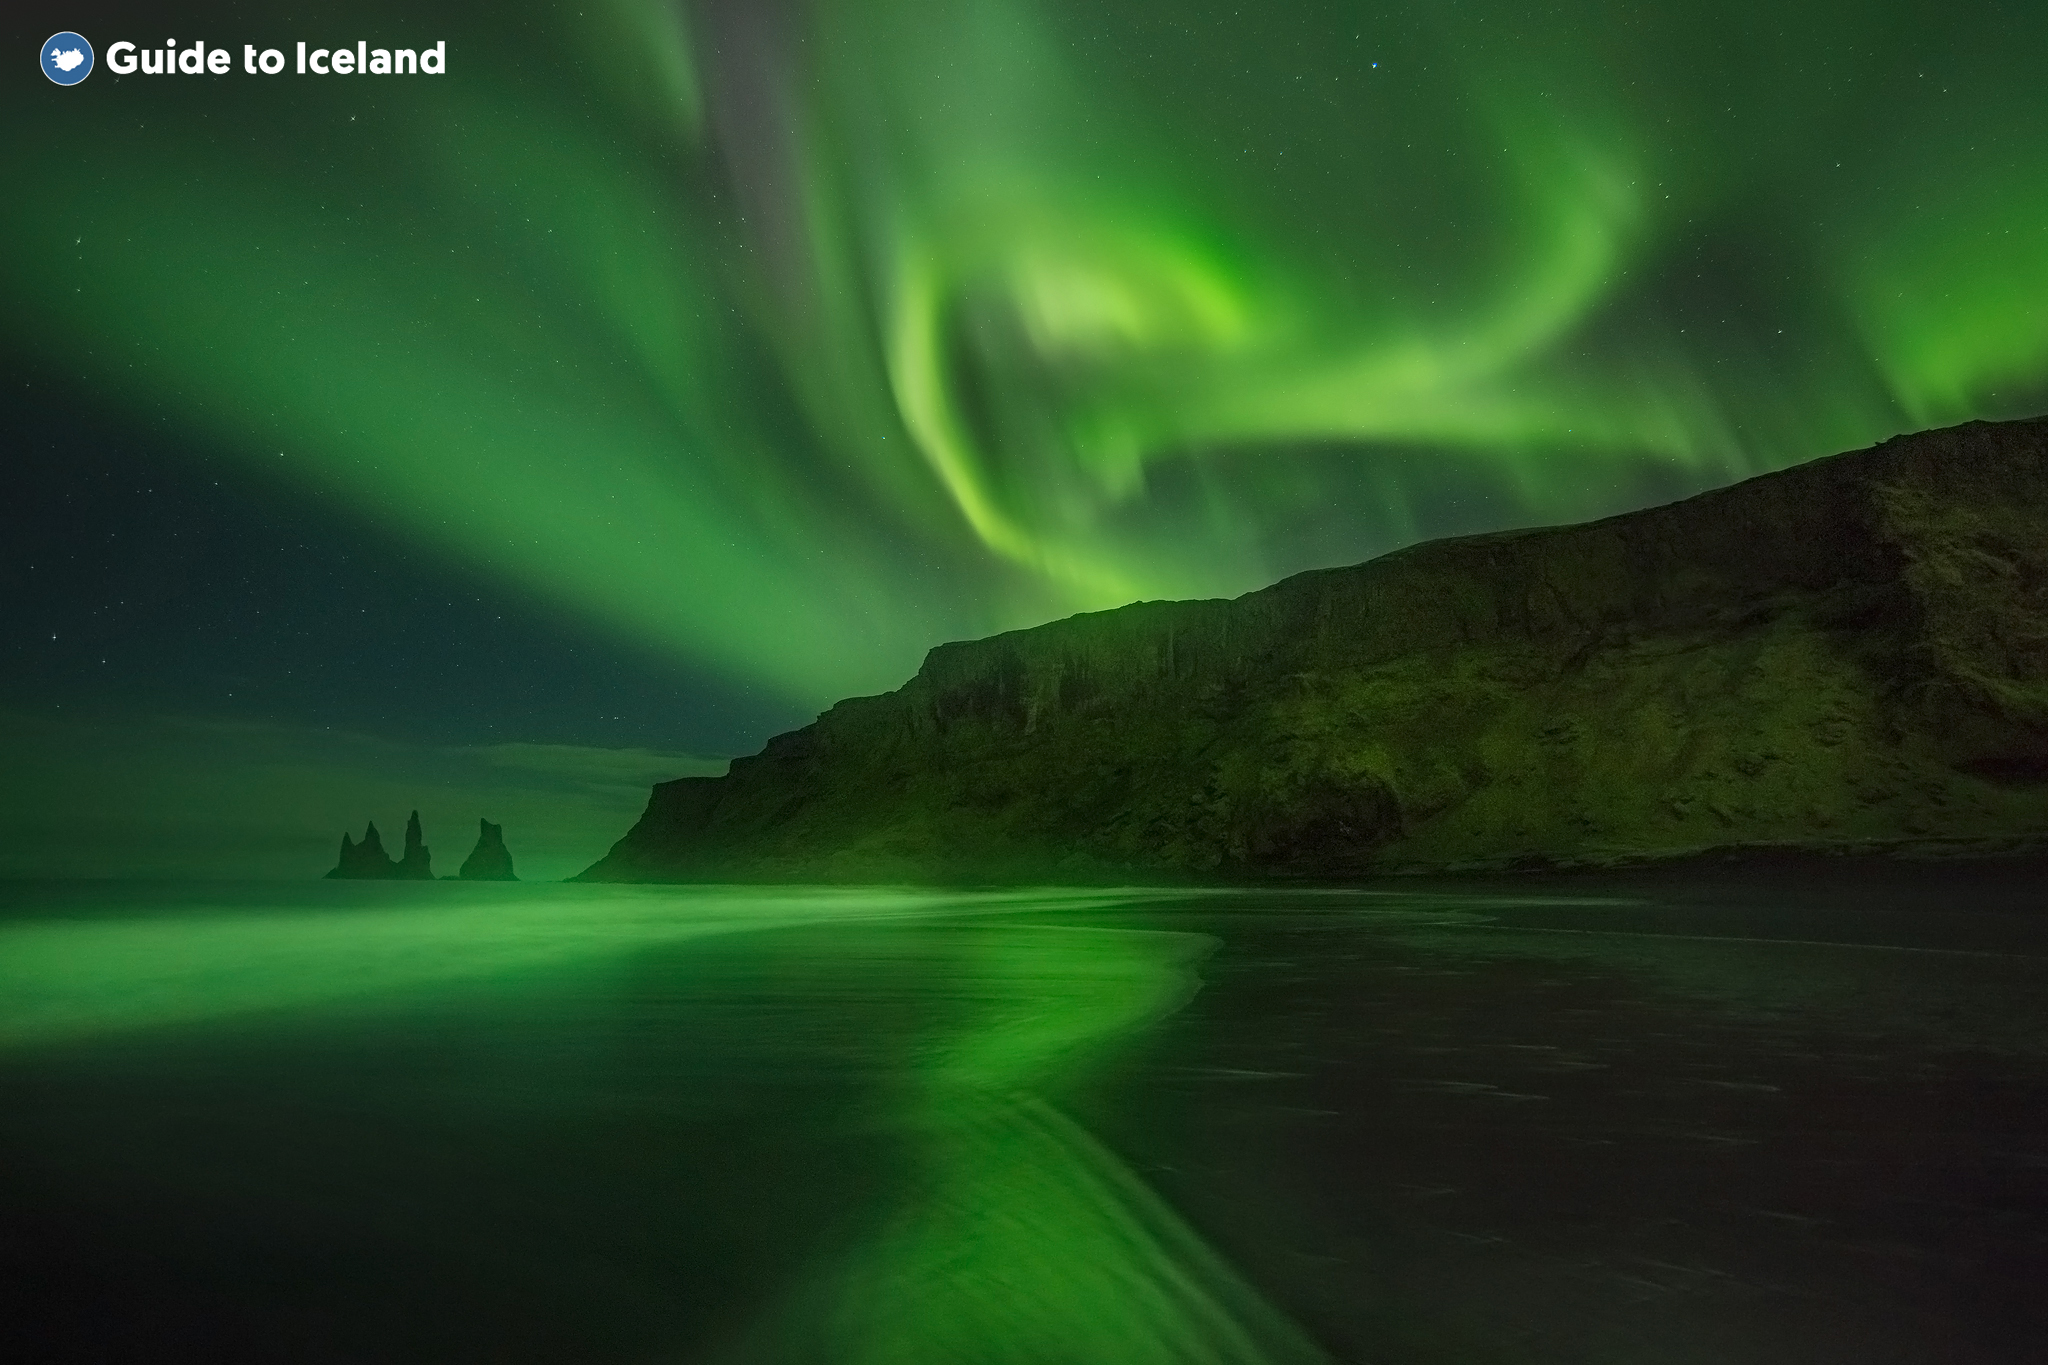 Die Polarlichter sind die berühmteste und schönste Winterattraktion Islands.